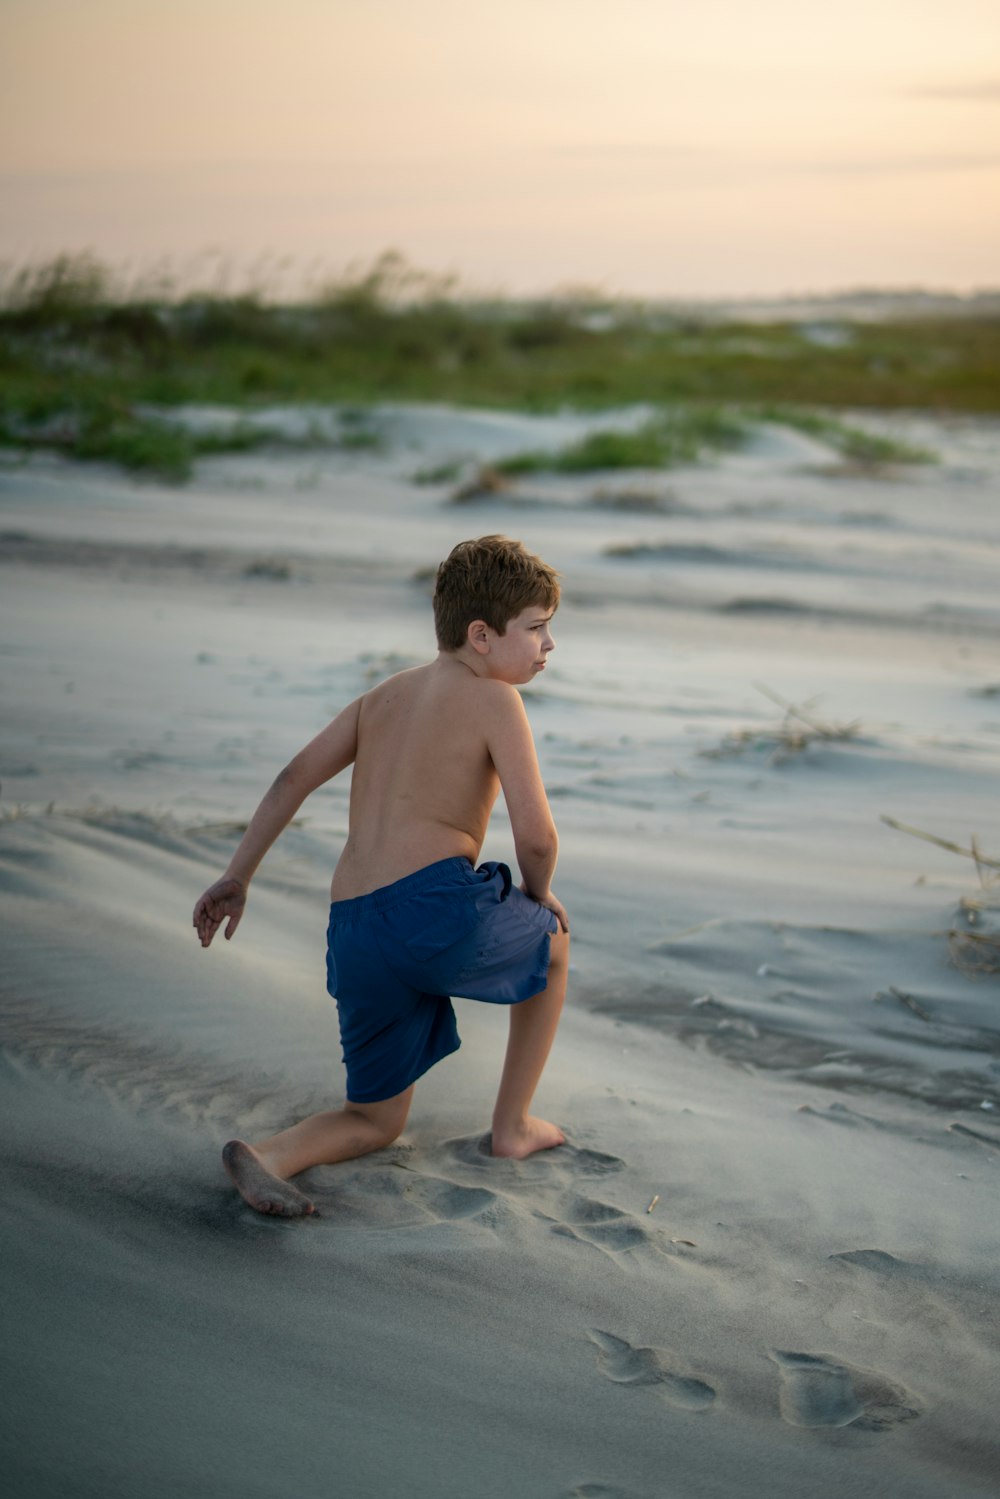 어린 소년이 해변의 모래에서 놀고 있다